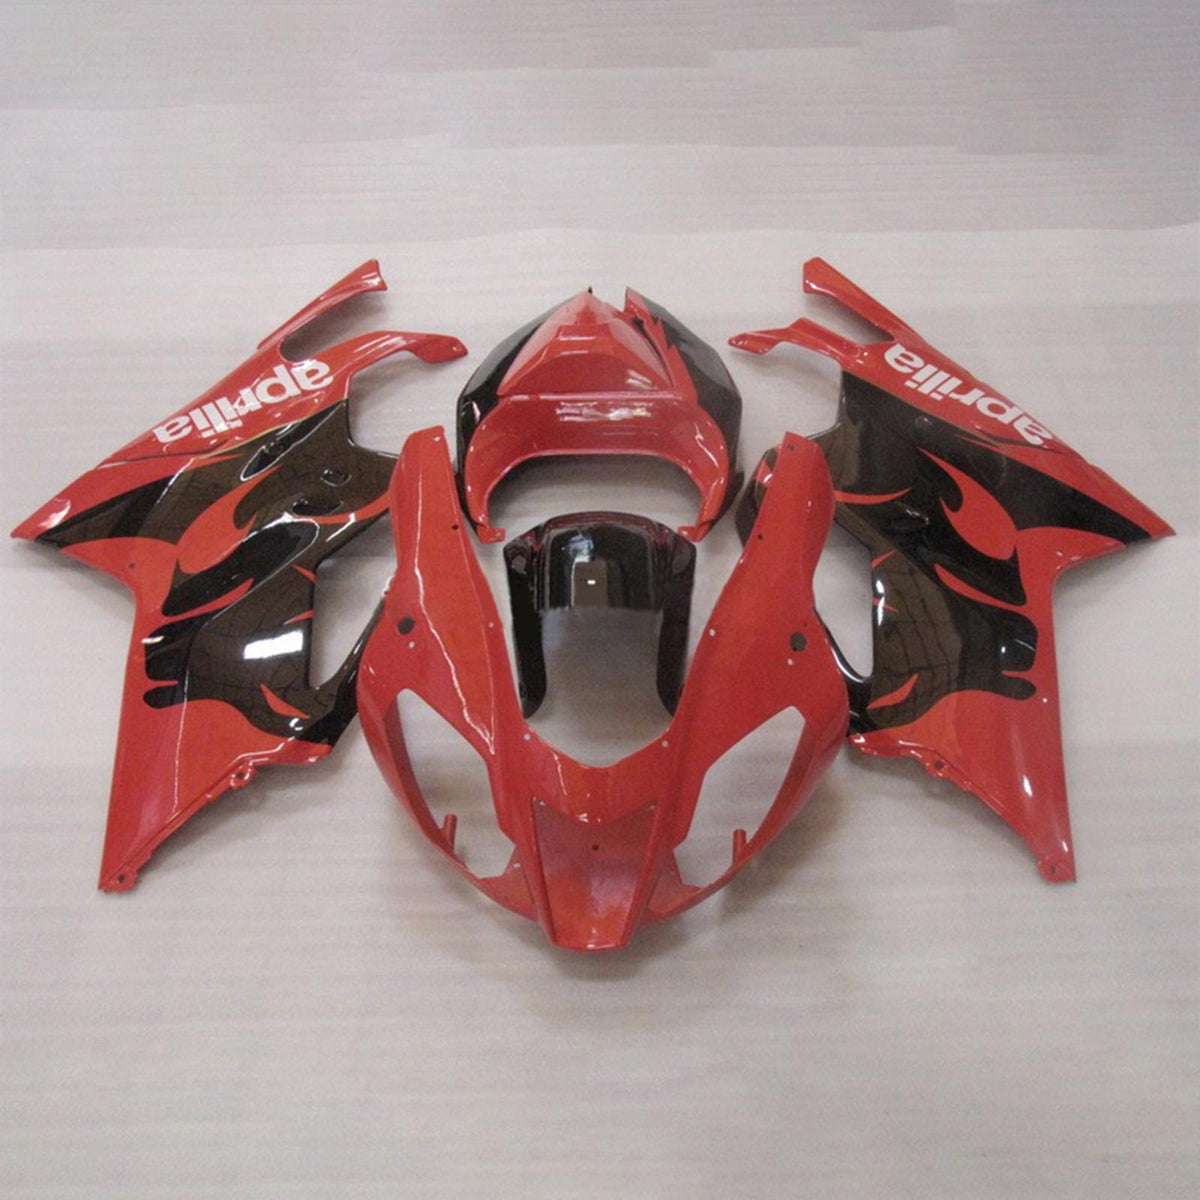 Amotopart 2003-2006 Aprilias RSV1000 Kit carena nera e rossa